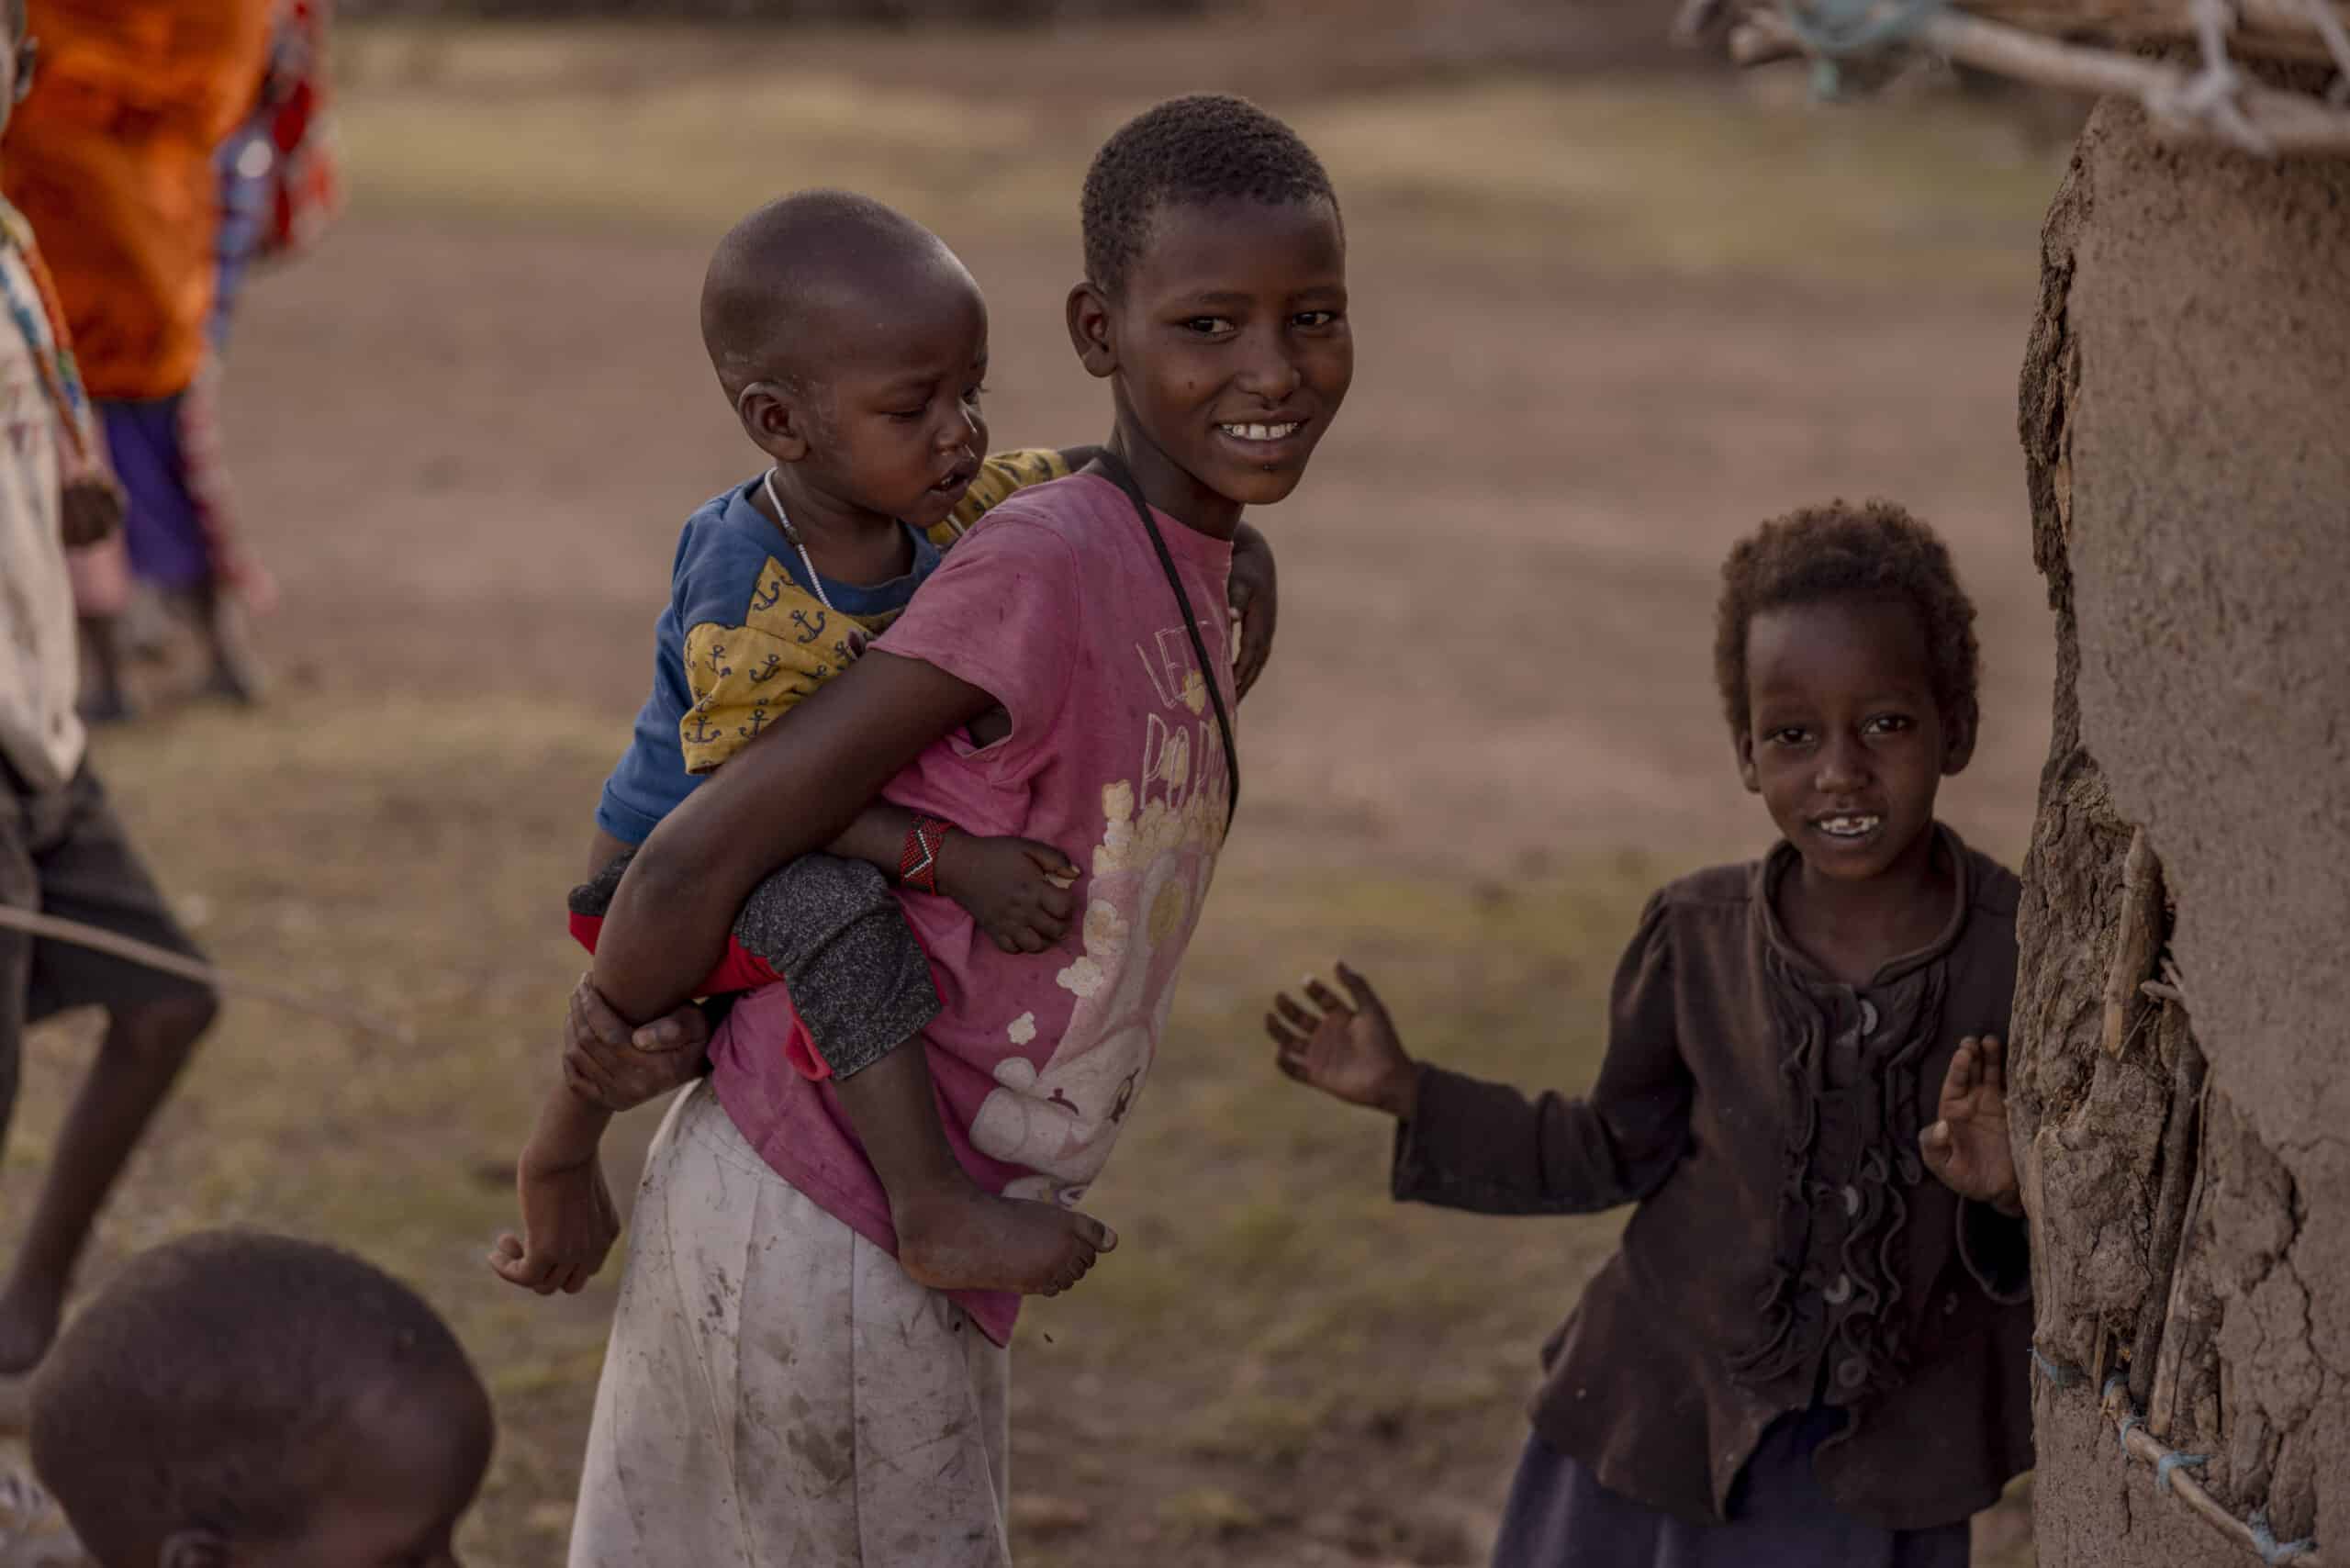 Ein junges Mädchen in ländlicher Umgebung trägt ein Kleinkind auf dem Rücken und lächelt in die Kamera, während ein anderes kleines Kind in der Nähe winkt. Sie sind umgeben von einer staubigen Landschaft und traditionellen Behausungen. © Fotografie Tomas Rodriguez